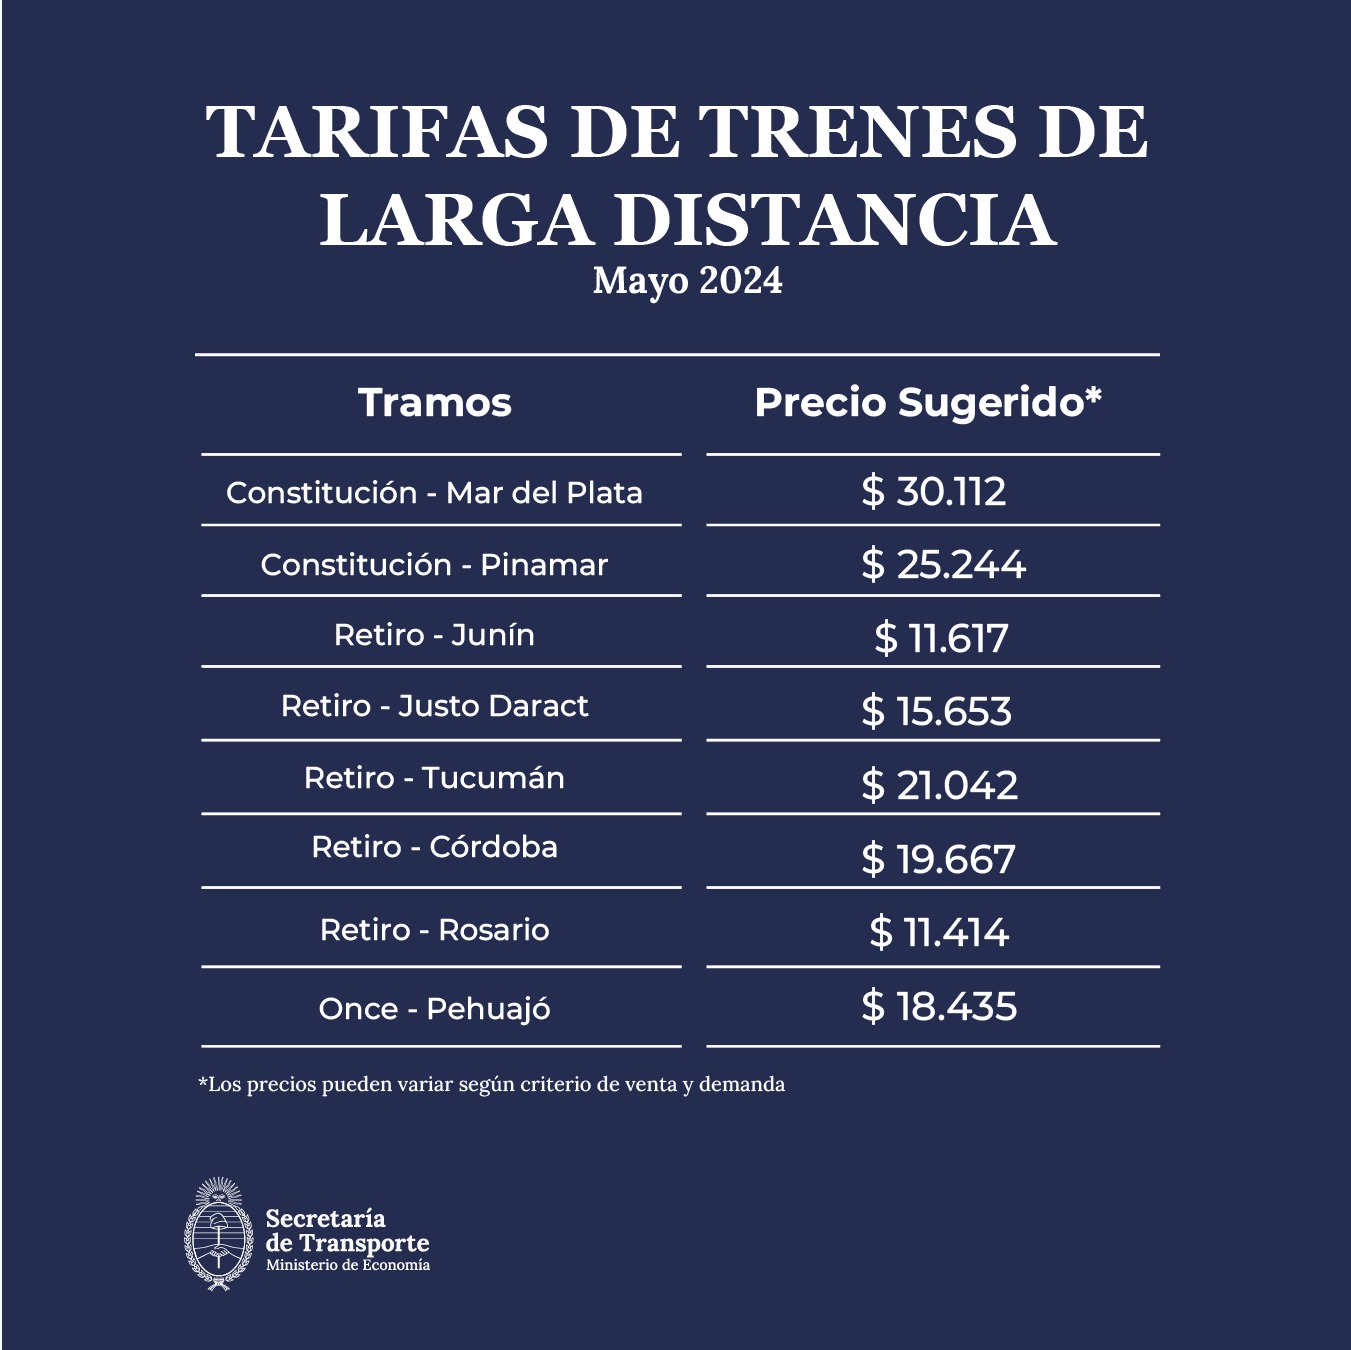 El tren más caro desde mayo: el Gobierno publicó las nuevas tarifas con fuertes aumentos - Arriba Lanus Revista